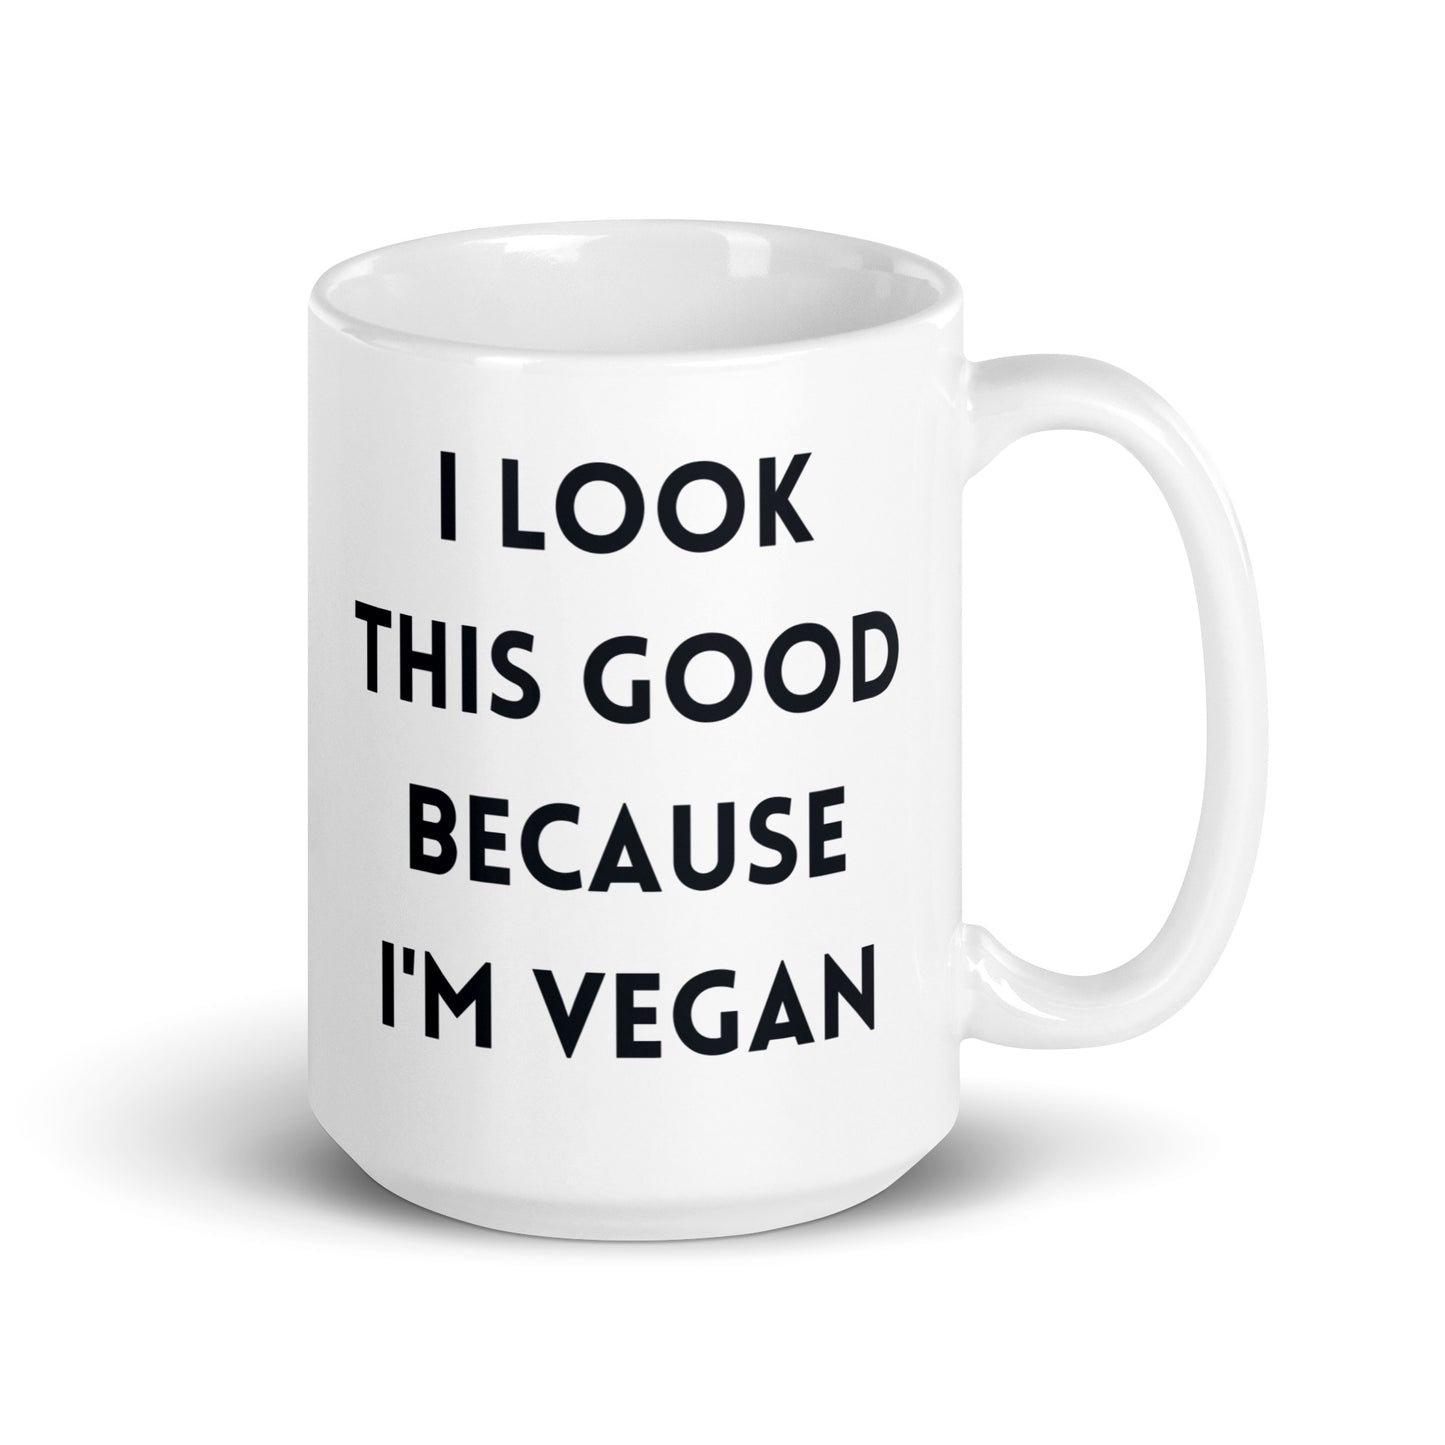 Because I'm Vegan - Vegan Coffee Mug